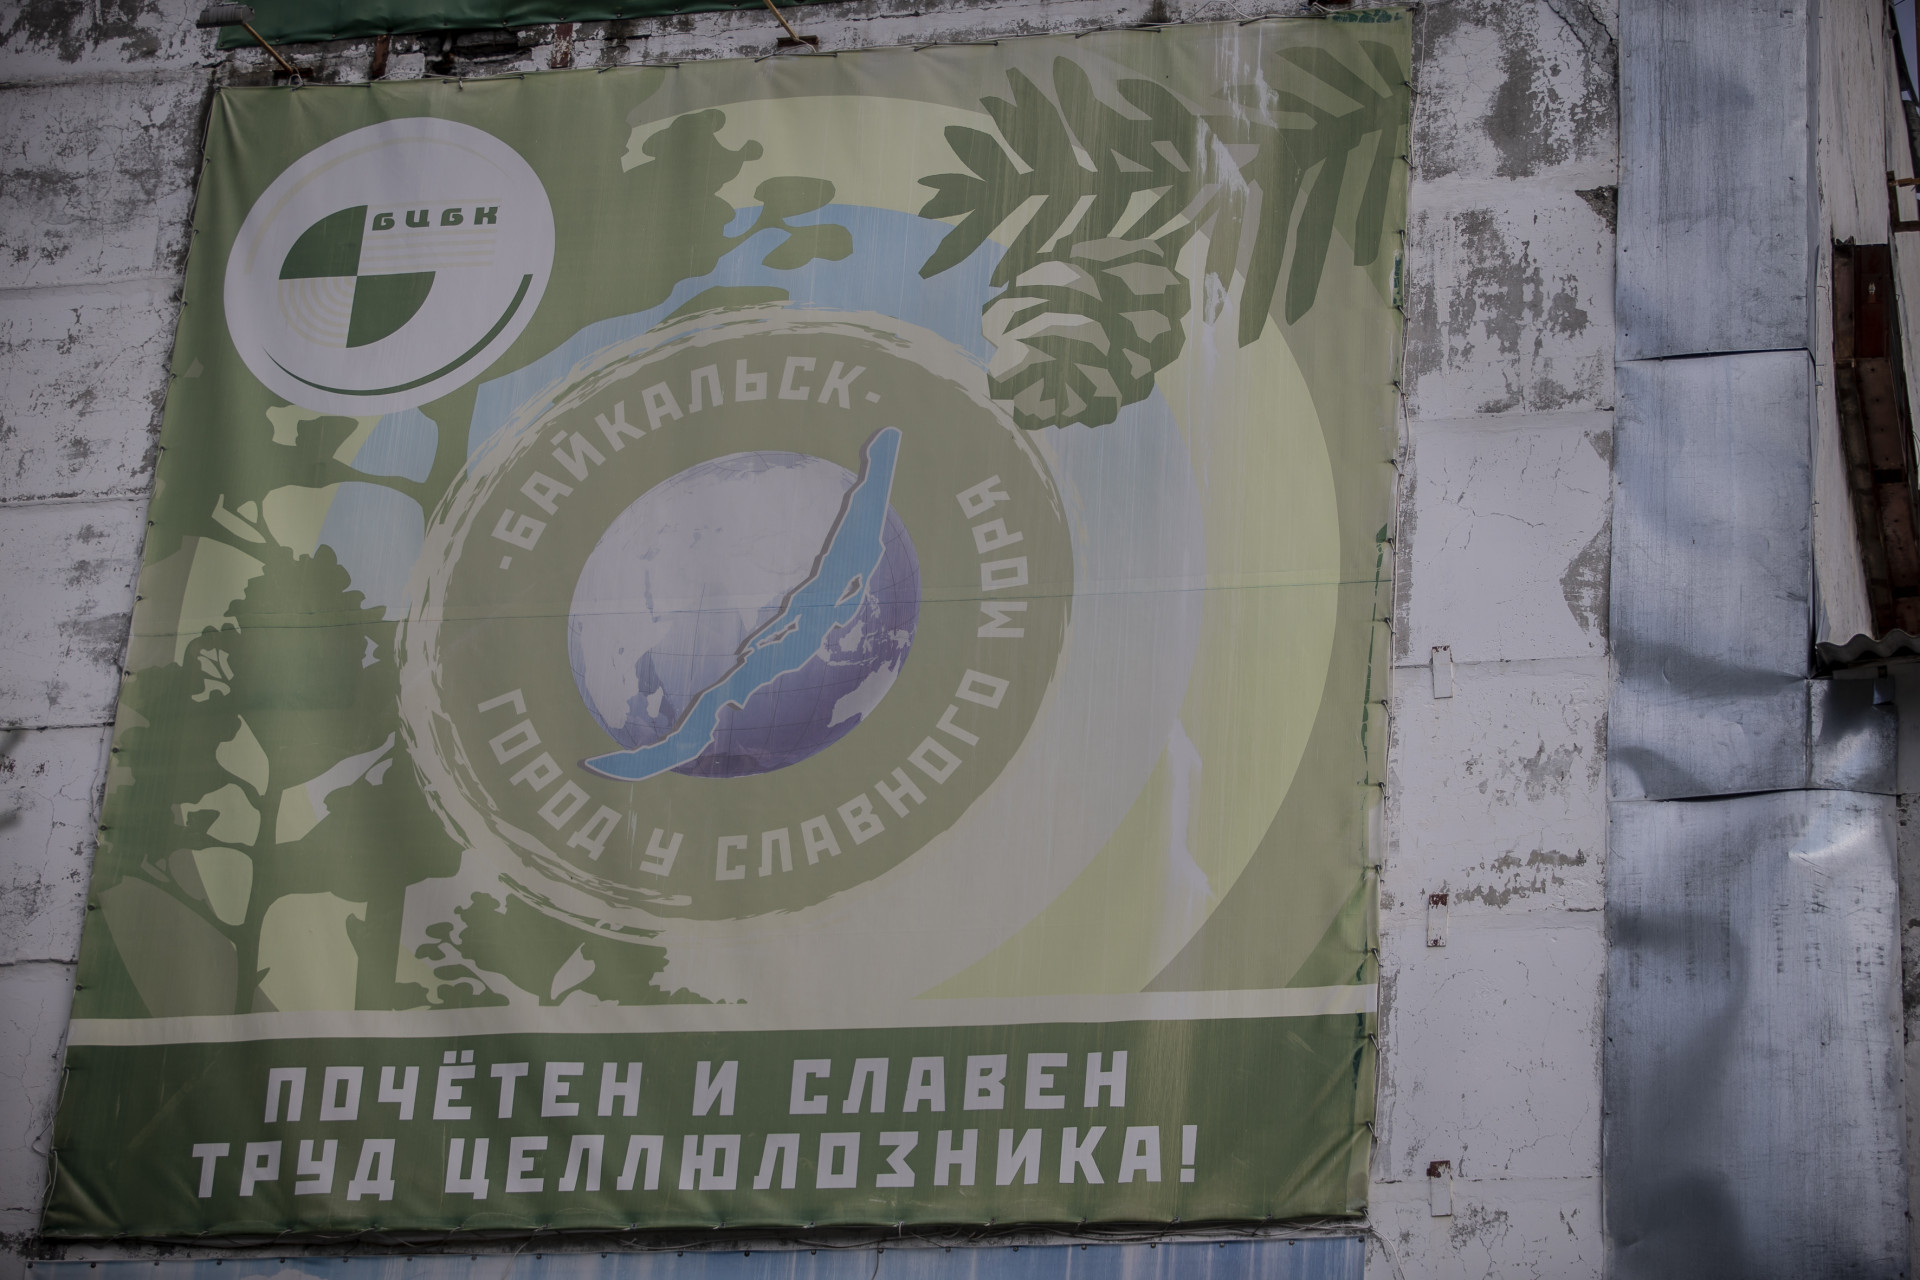 Наивные попытки ввести в заблуждение общественность лозунгами на стенах комбината, отравлявшего Байкал на протяжении 45 лет